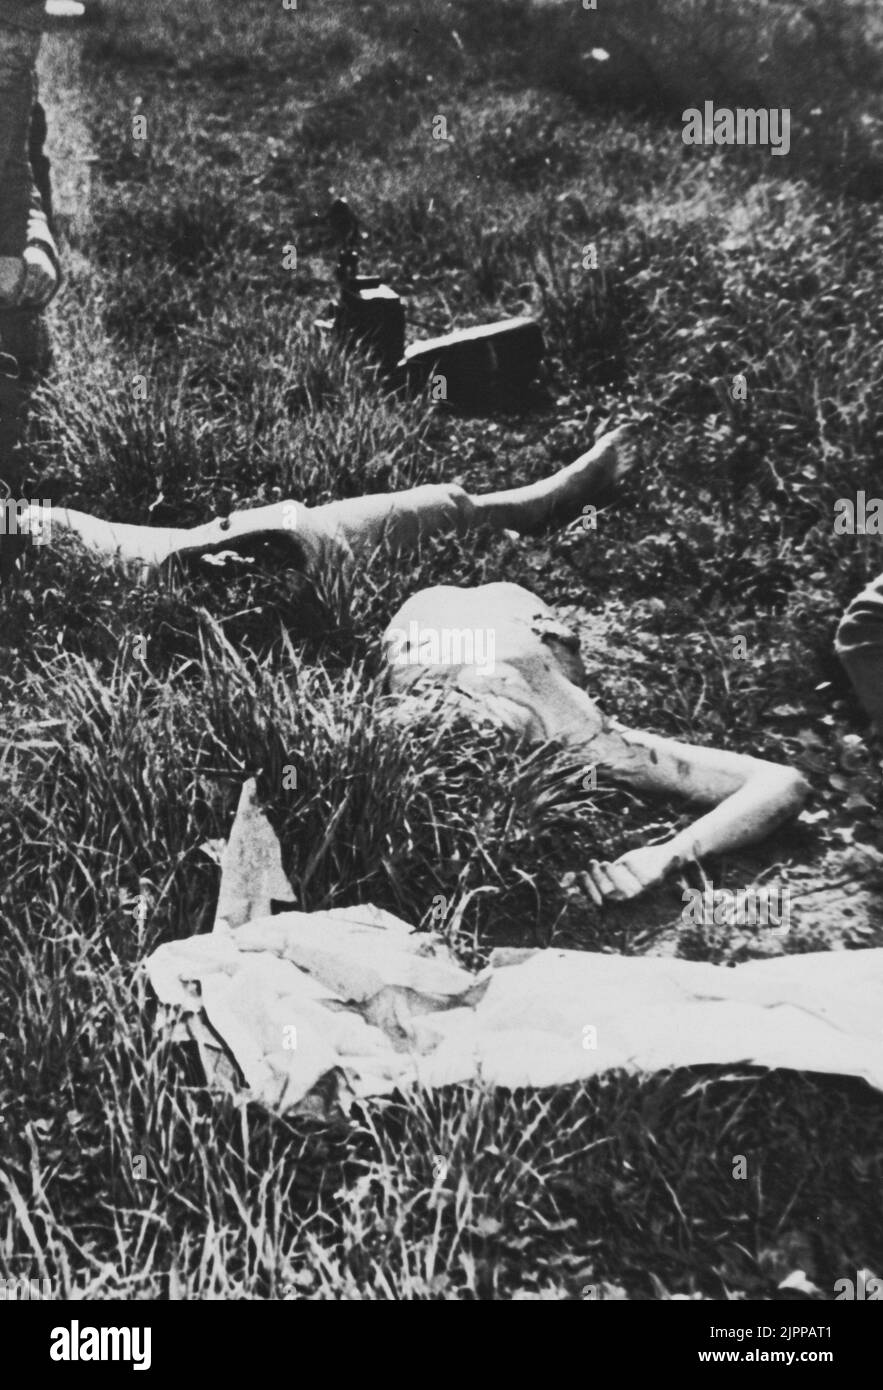 ELIZABETH KURZ alias The Black Dahlia ( 1924 - 1947 ). Die elizabeth-Leiche vom 15.. januar 1947 wurde in zwei Stücken auf einem freien Grundstück in Hollywood gefunden. Der Mord ist immer noch ungelöst - KINO - GEHEIMNIS - MISTERO - delitto insoluto - omicidio - CRONACA NERA - Kult macabro ---- Archivio GBB Stockfoto